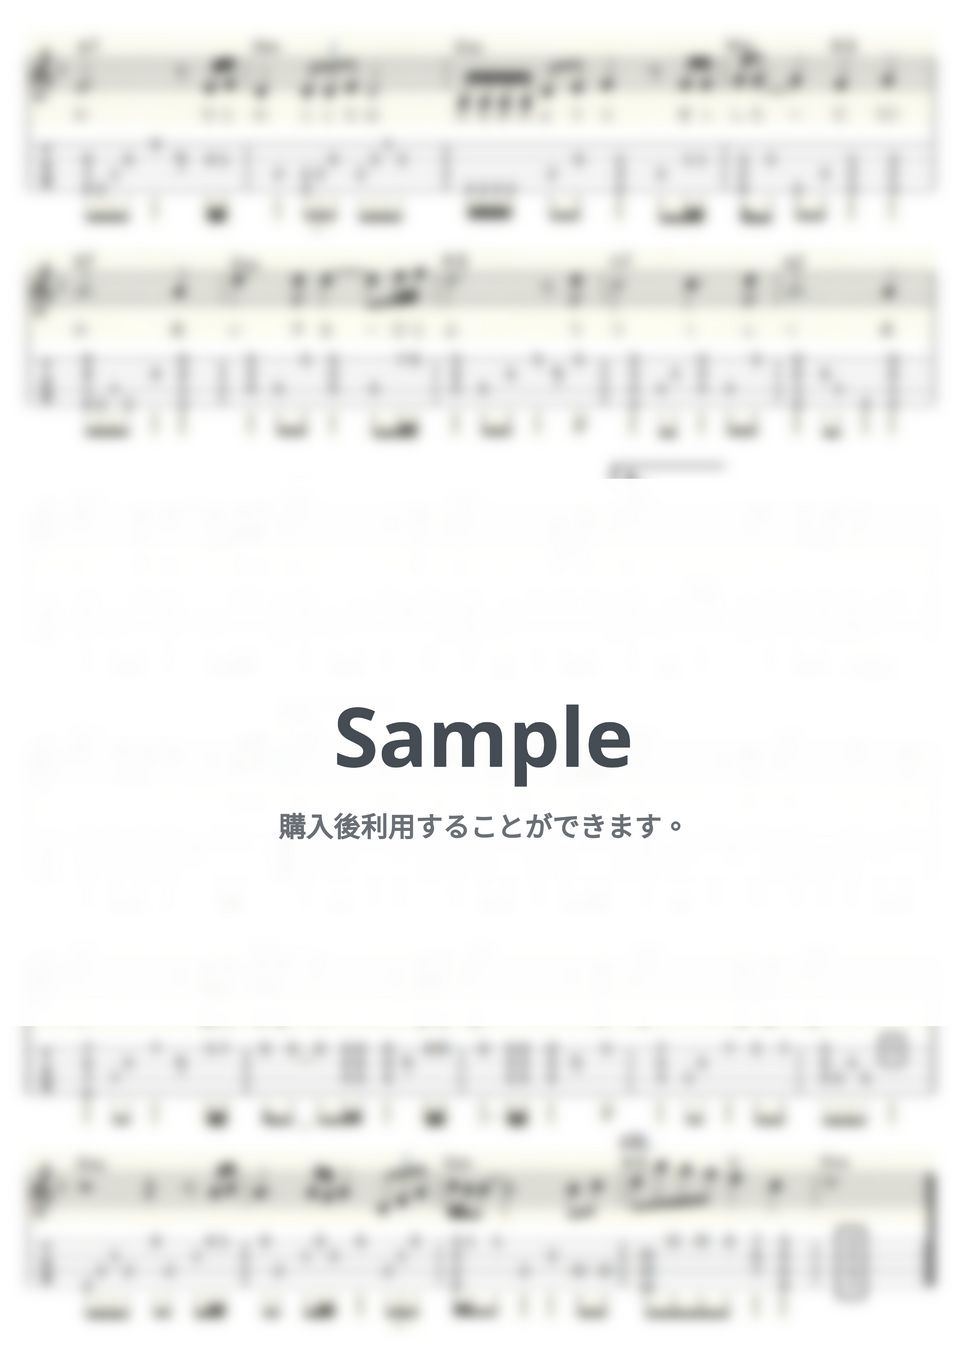 五木 ひろし - 契り (ｳｸﾚﾚｿﾛ/Low-G/中級) by ukulelepapa